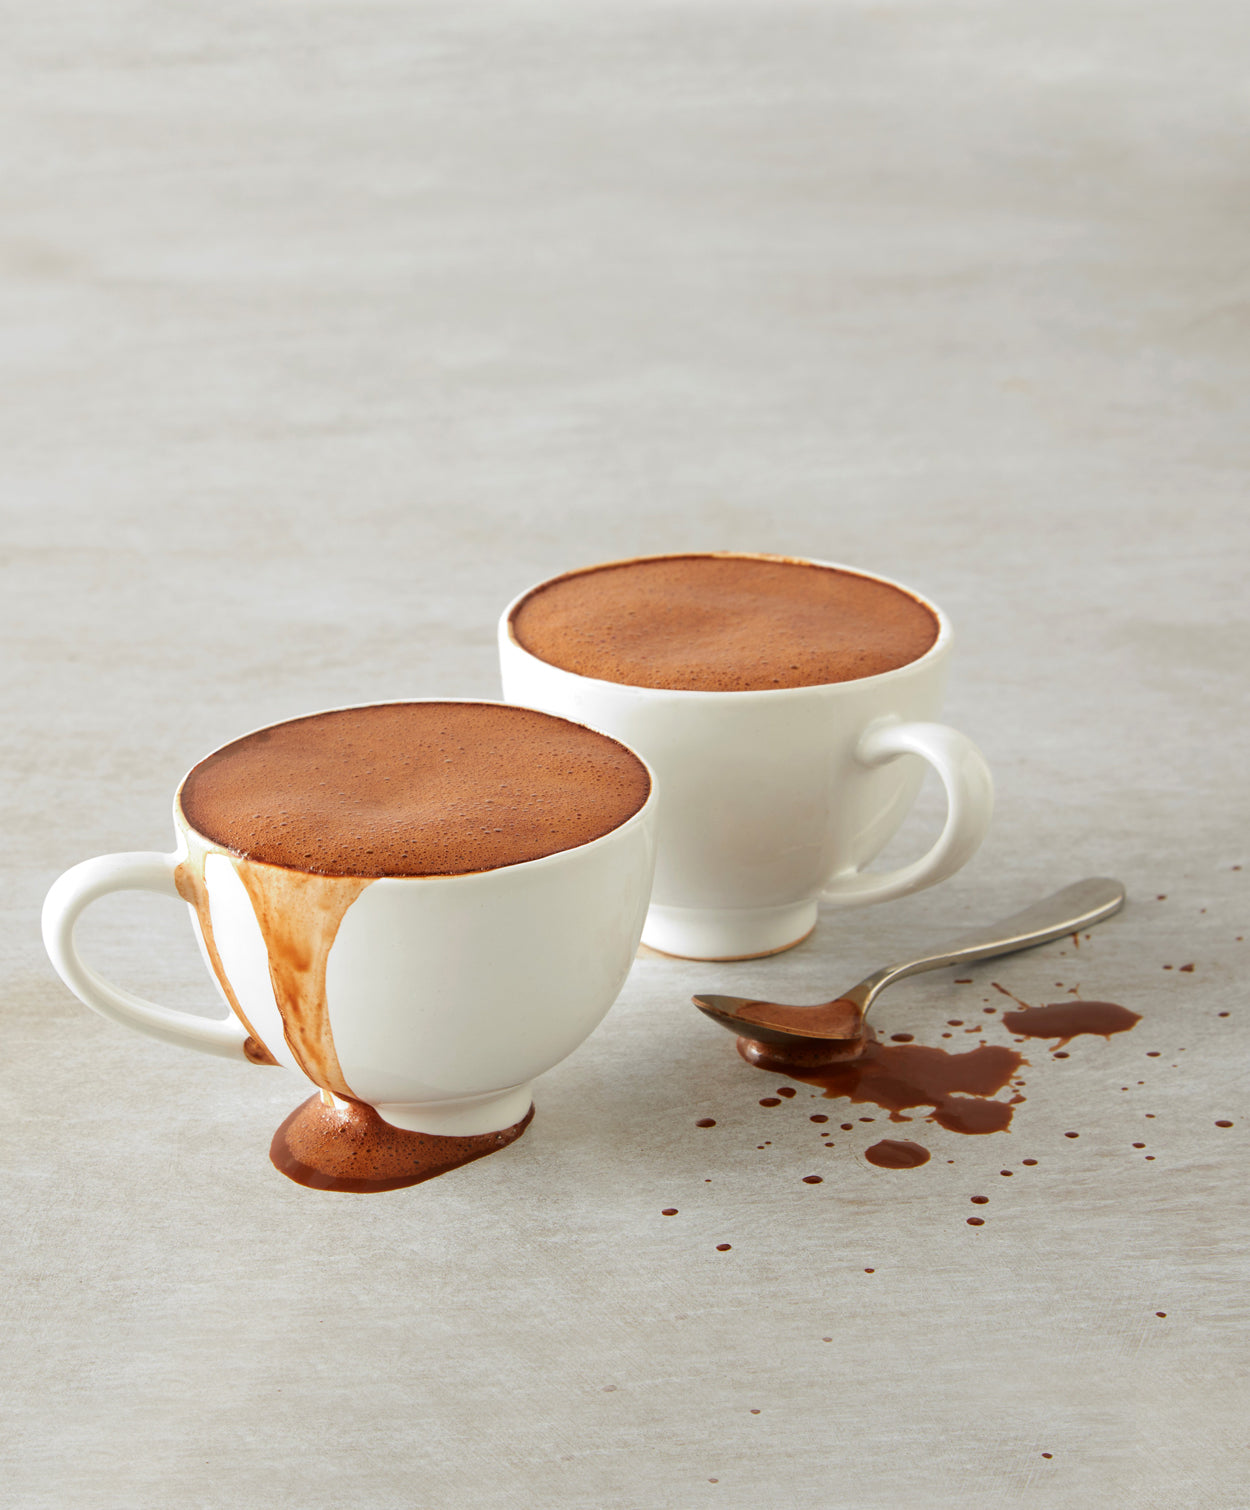 Chocolat chaud cappuccino & caramel salé